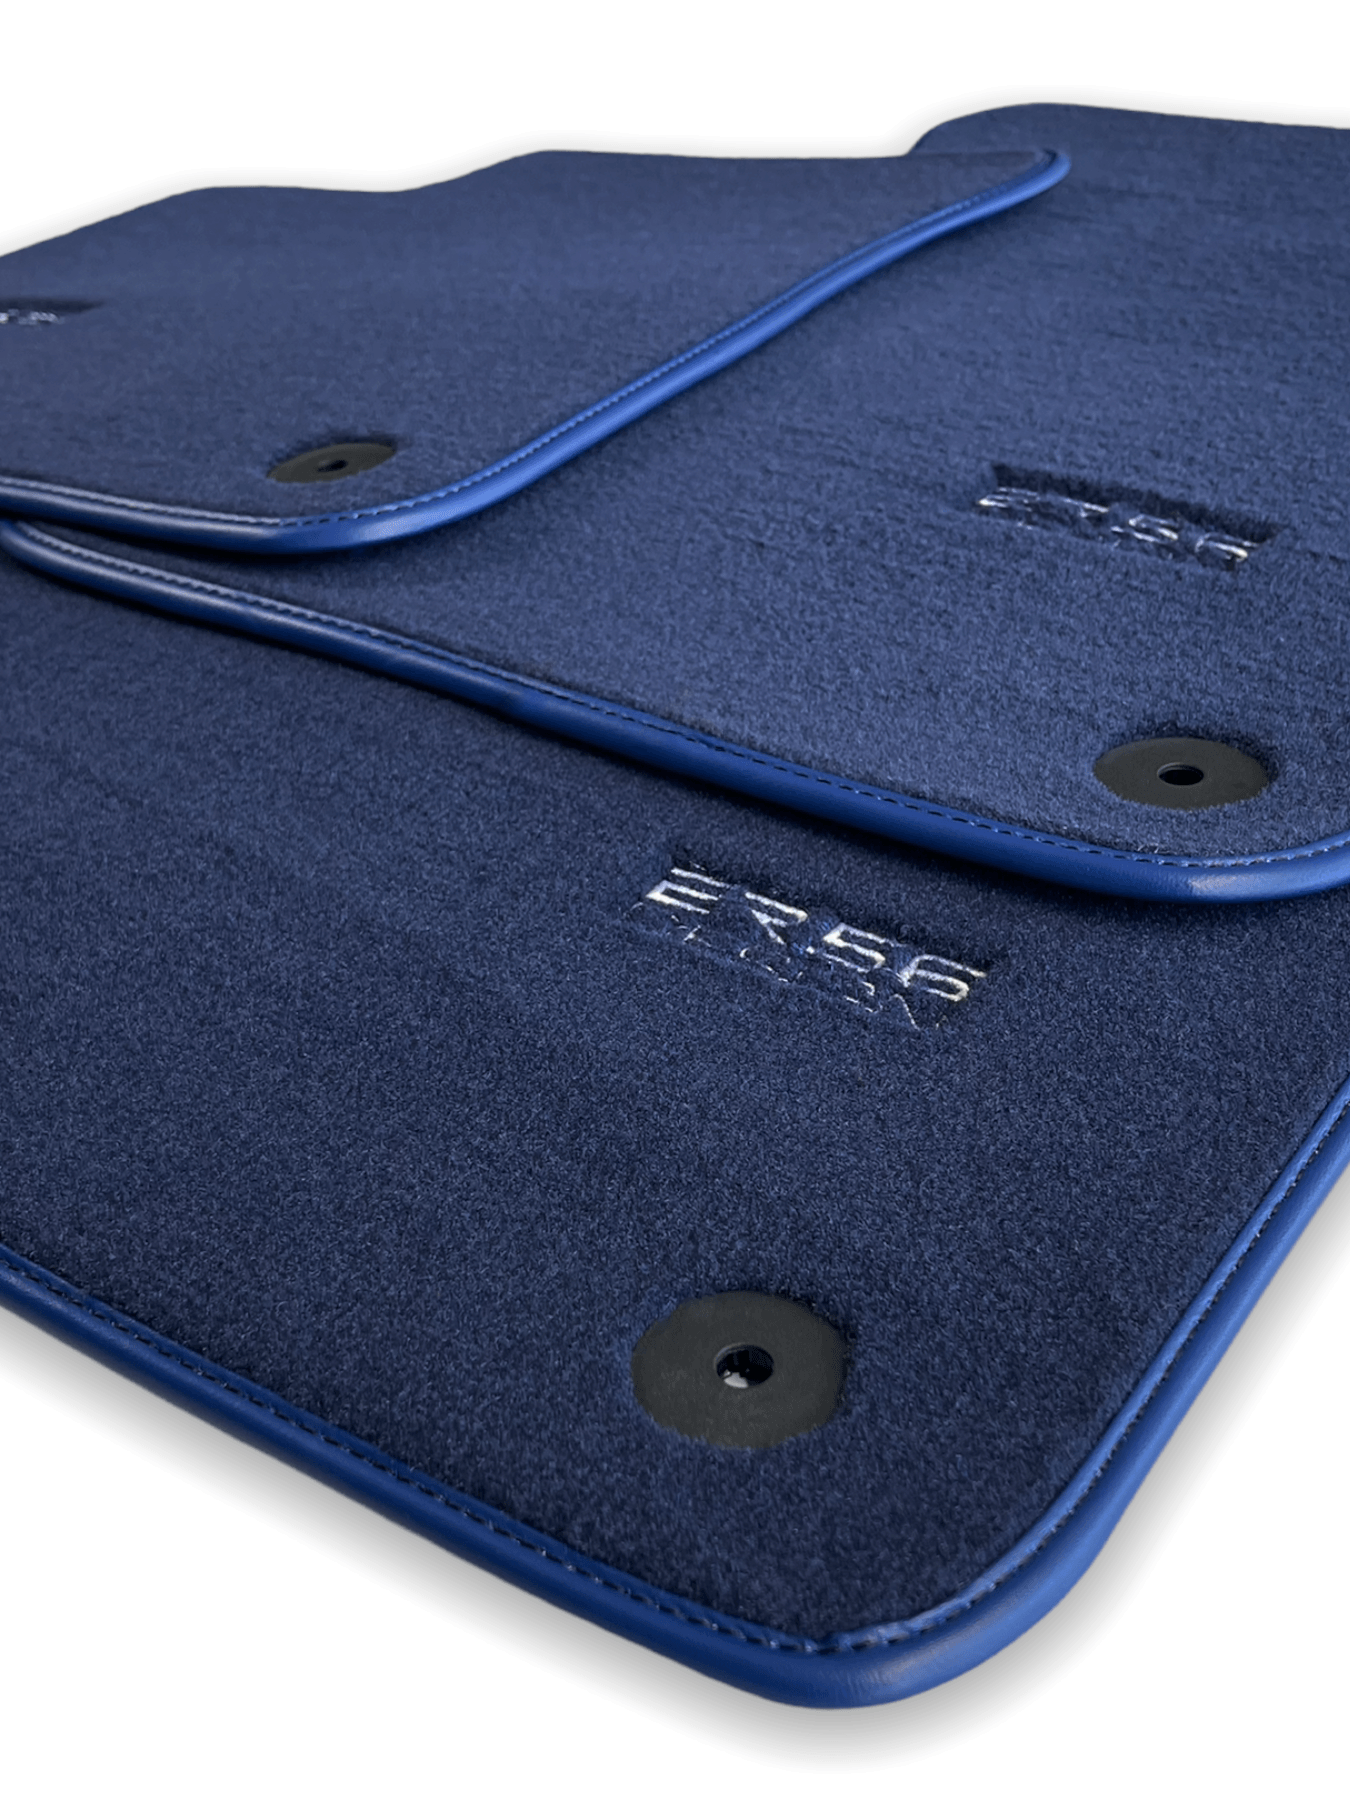 Dark Blue Floor Mats for Audi A4 - B7 Avant (2005-2008) | ER56 Design